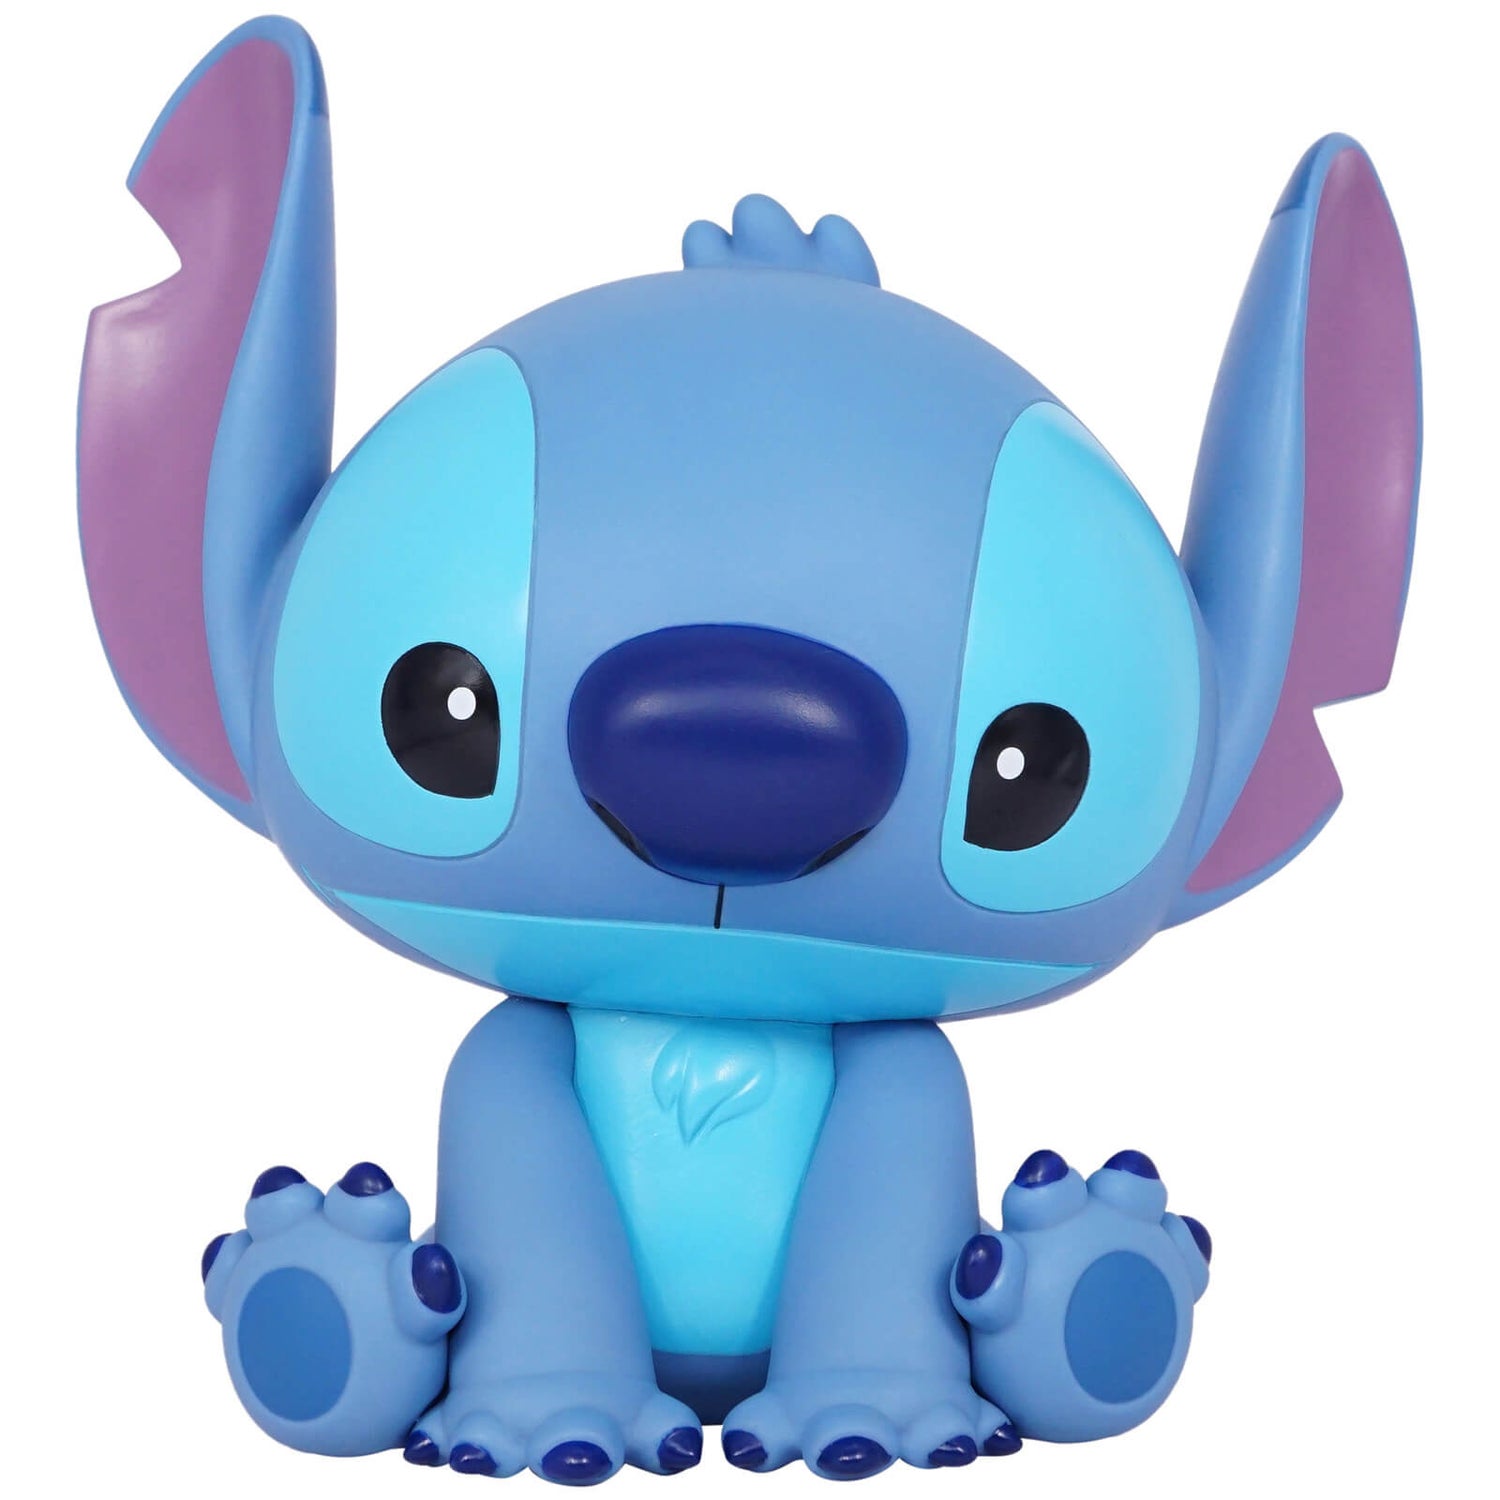 Disney Stitch Figural PVC Bank